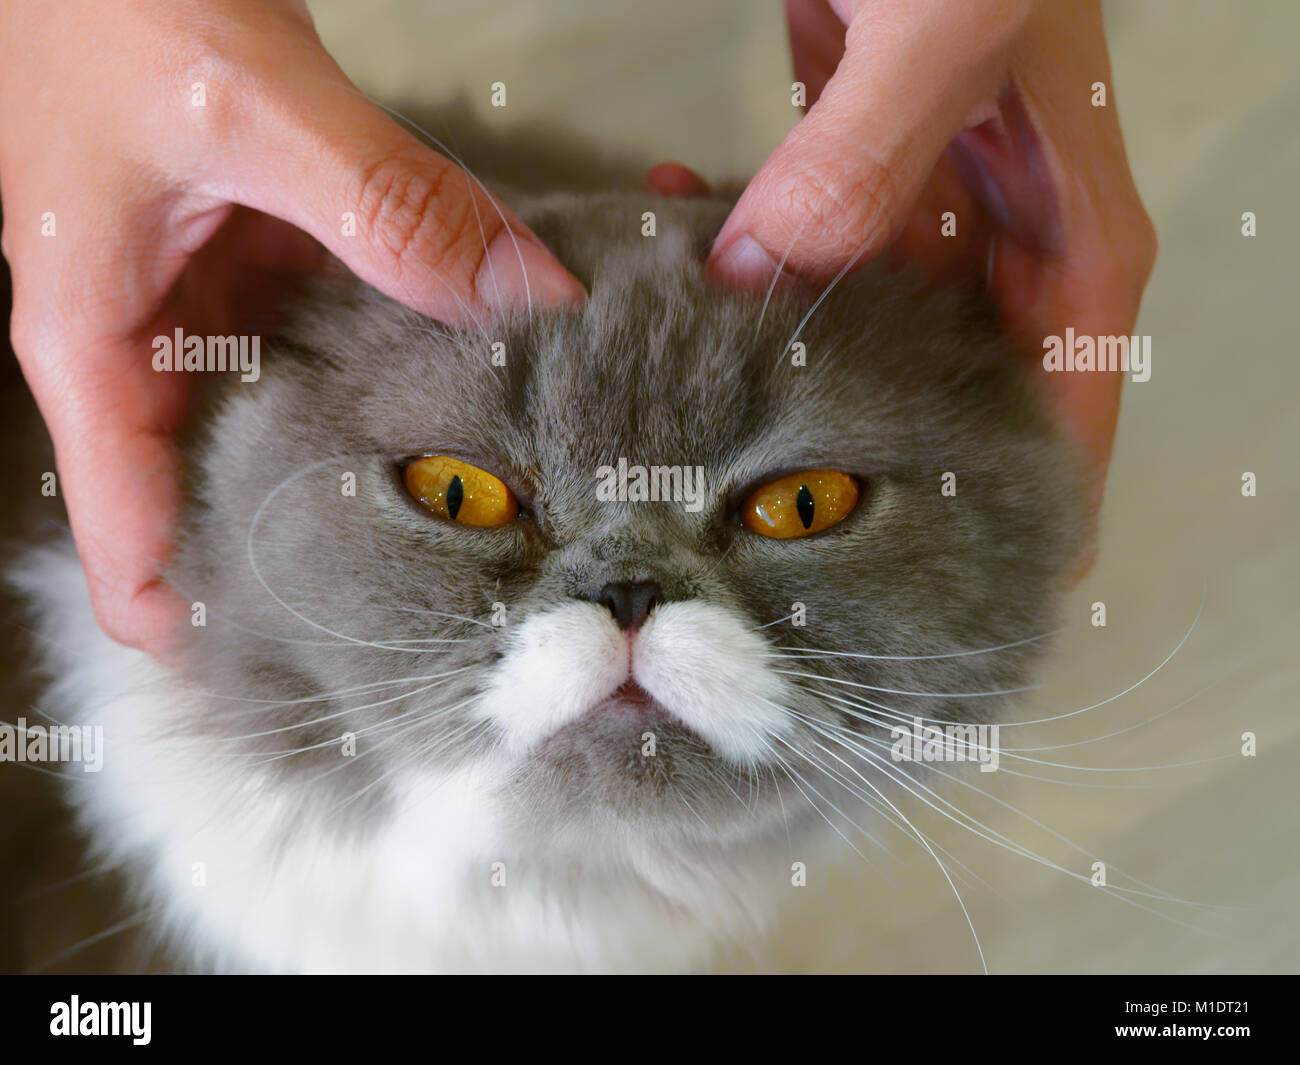 Frau Hände pet und Massage auf dem Kopf von grauen und weißen adorable Cat über Holz- Hintergrund Stockfoto